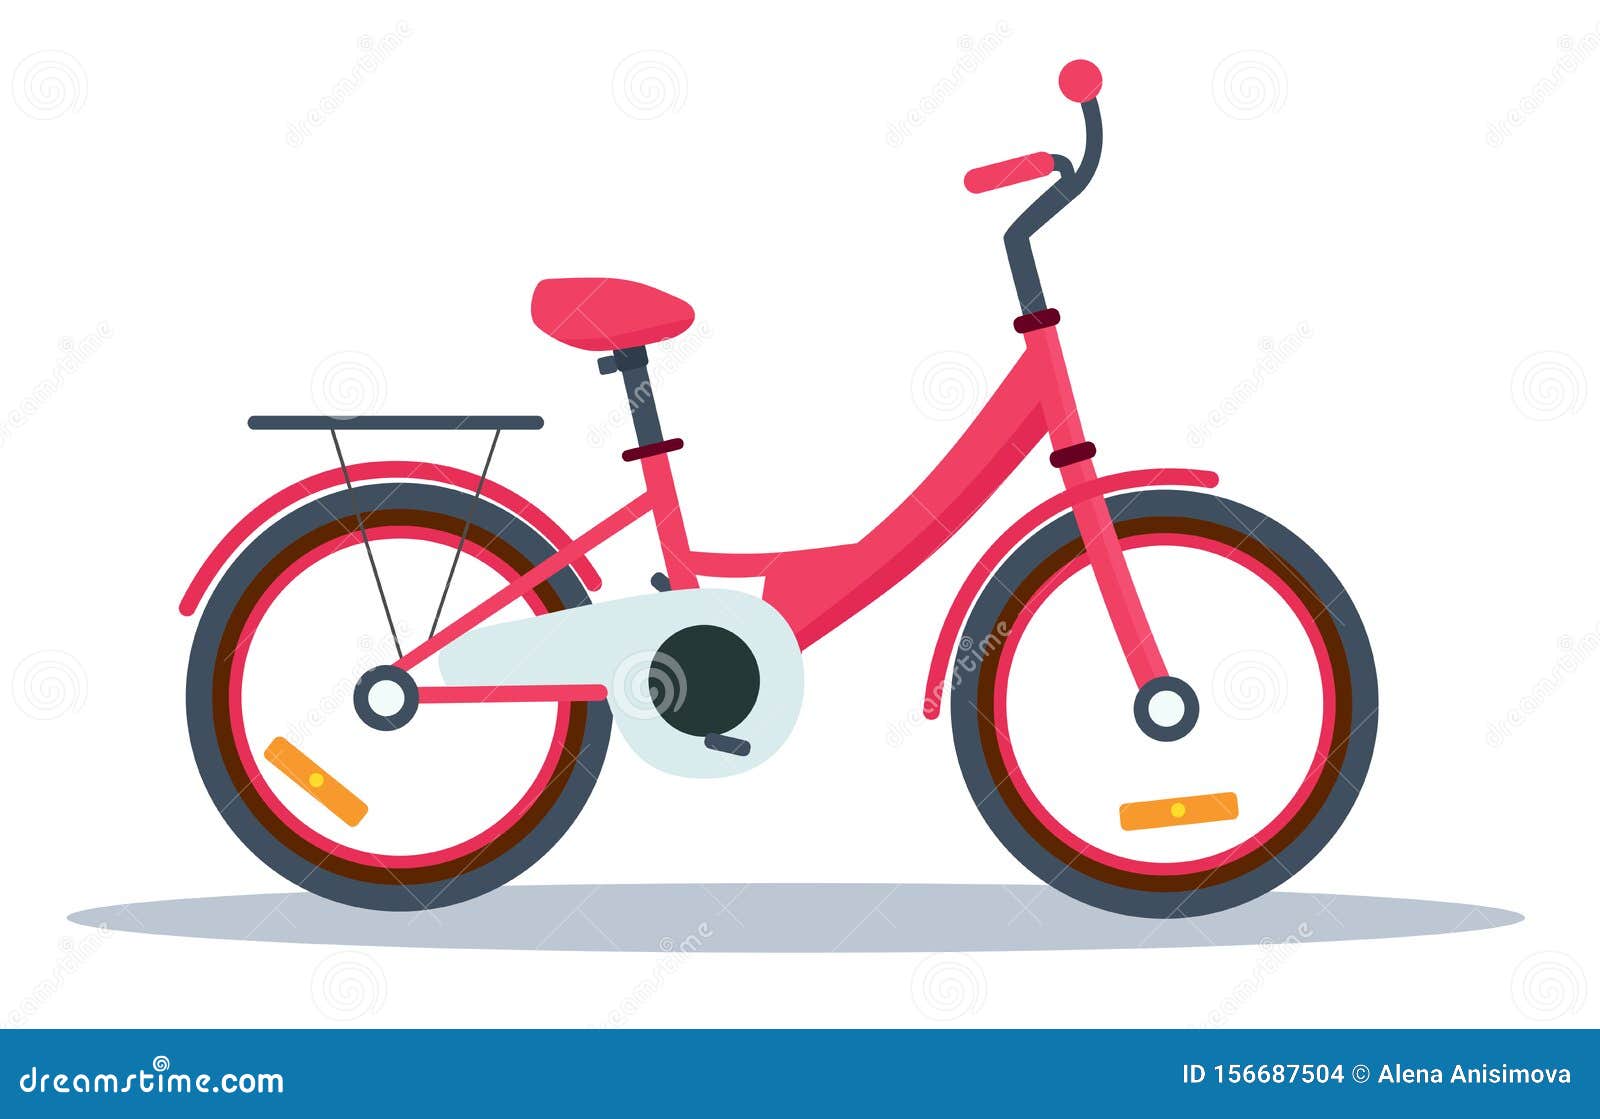 Bicicletas Para Niños Dibujos Deals, SAVE 54%.